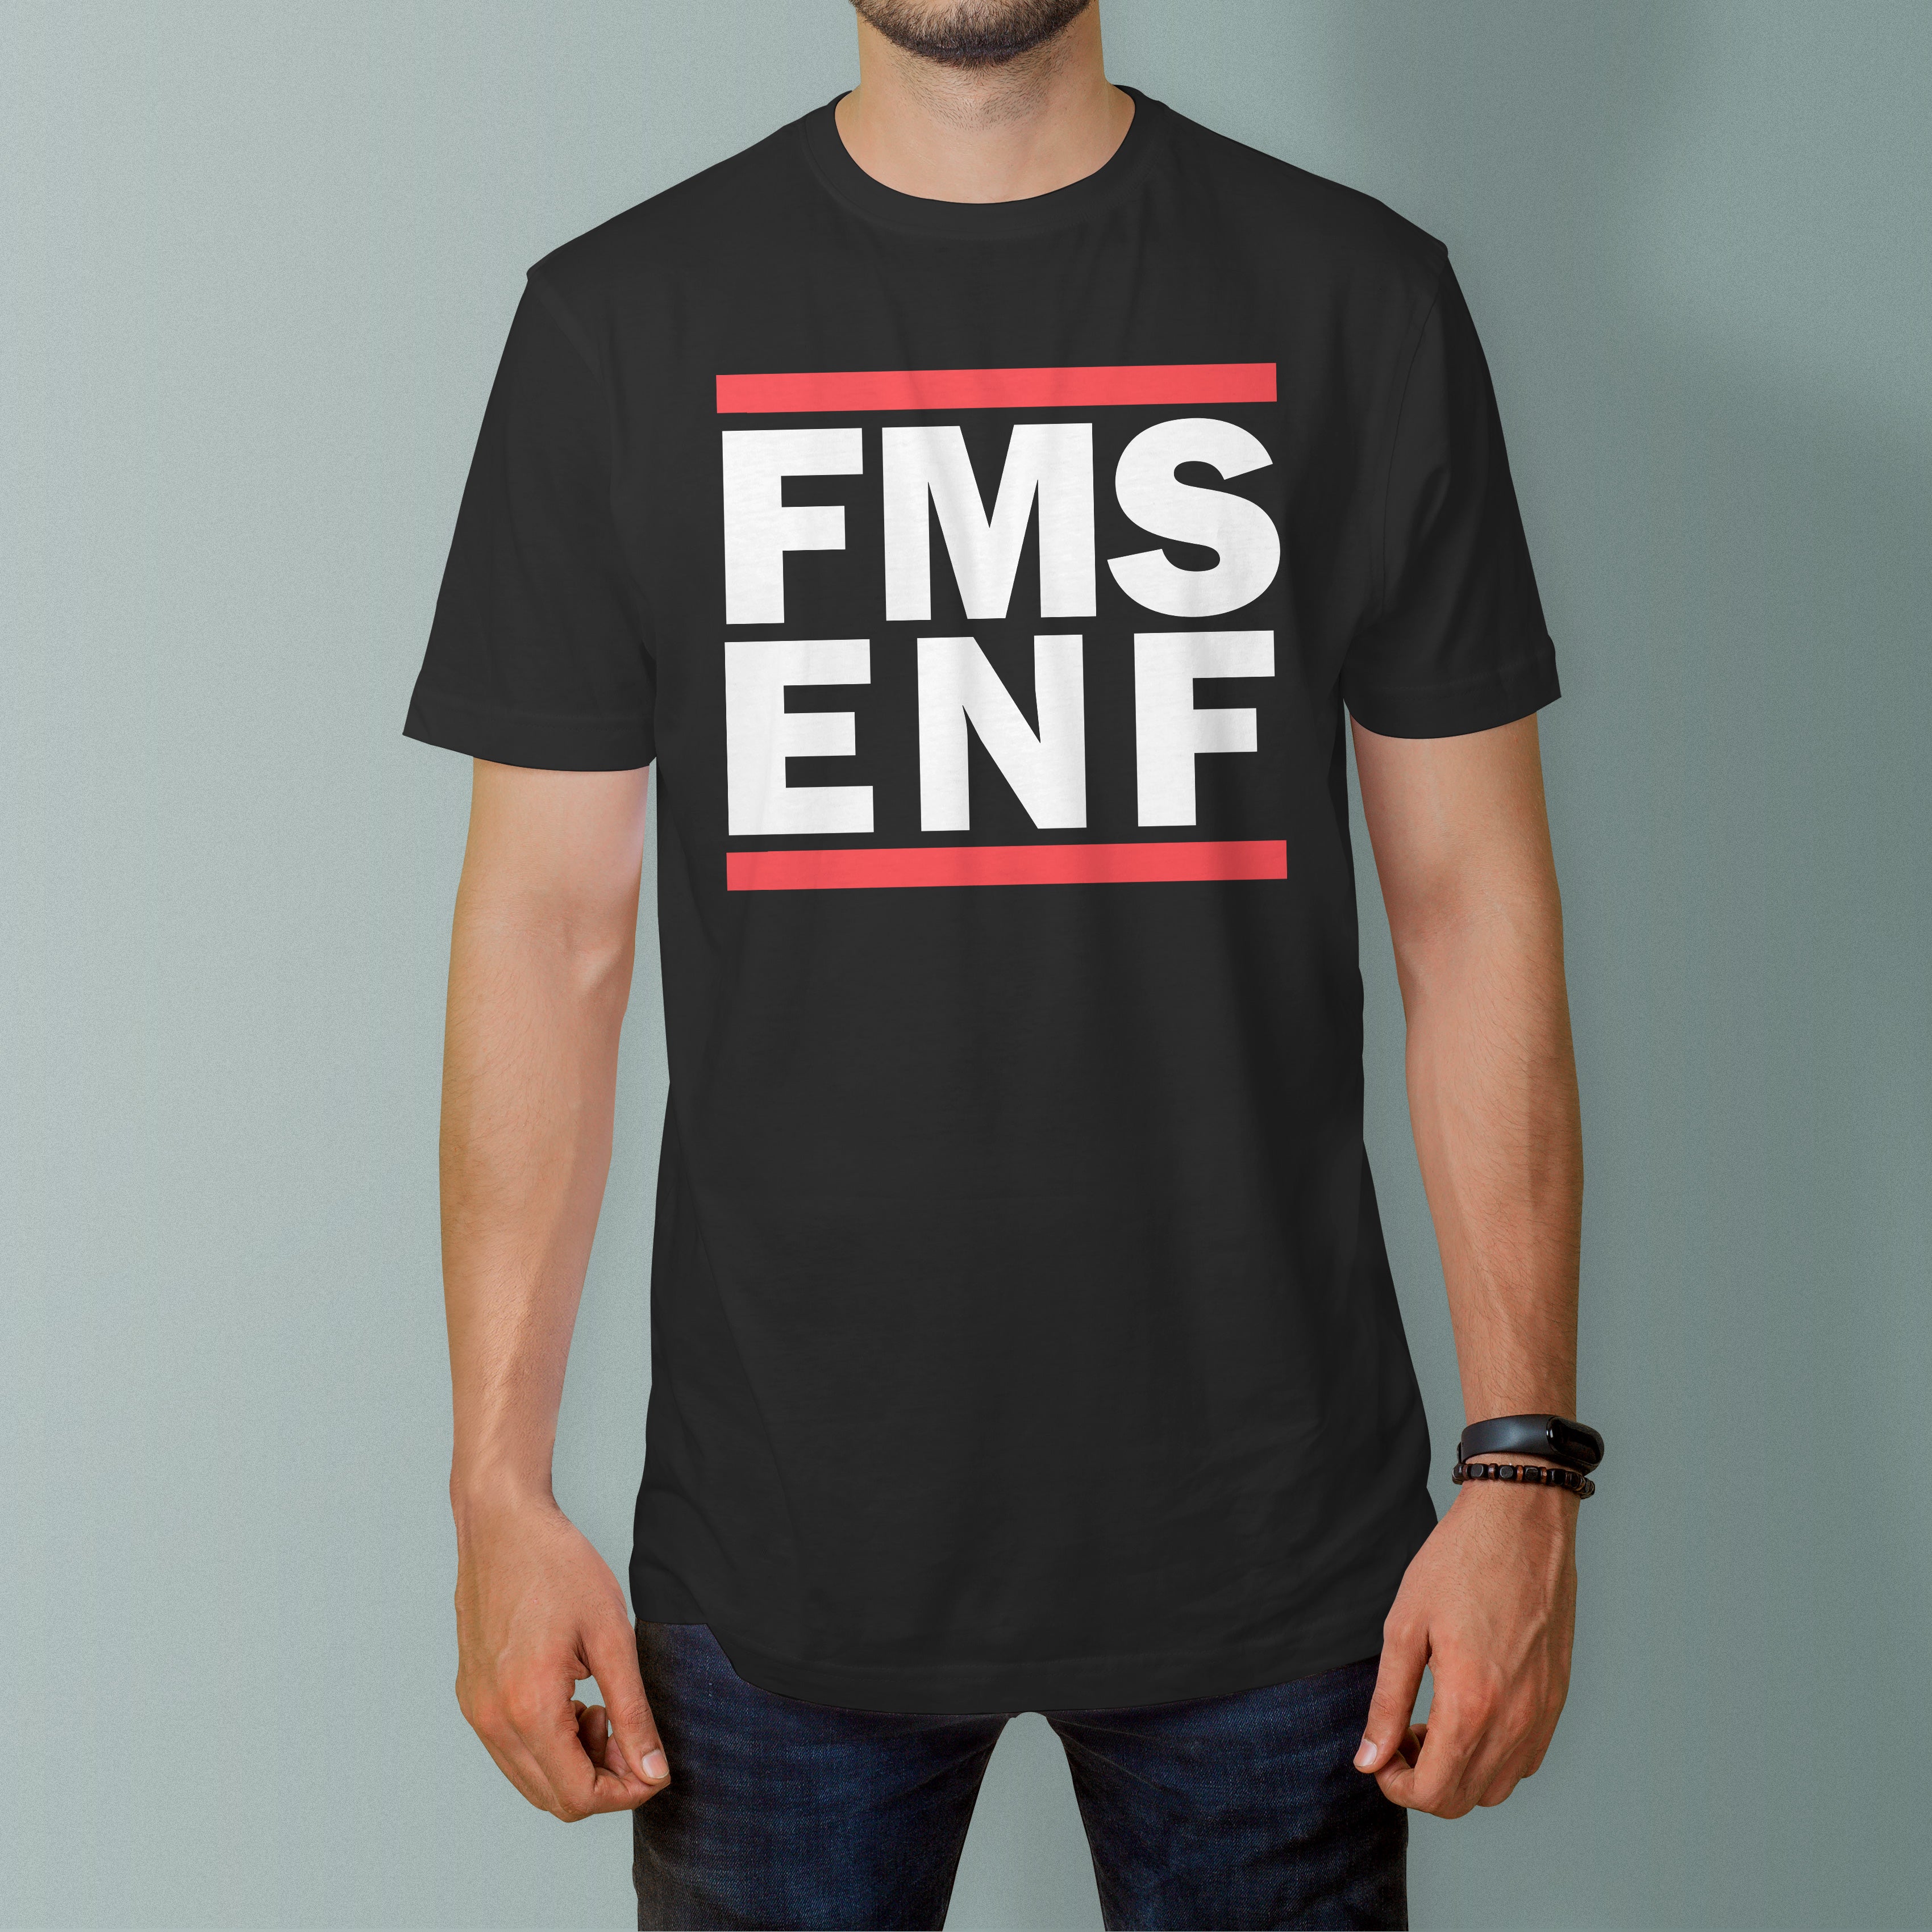 FMS ENF